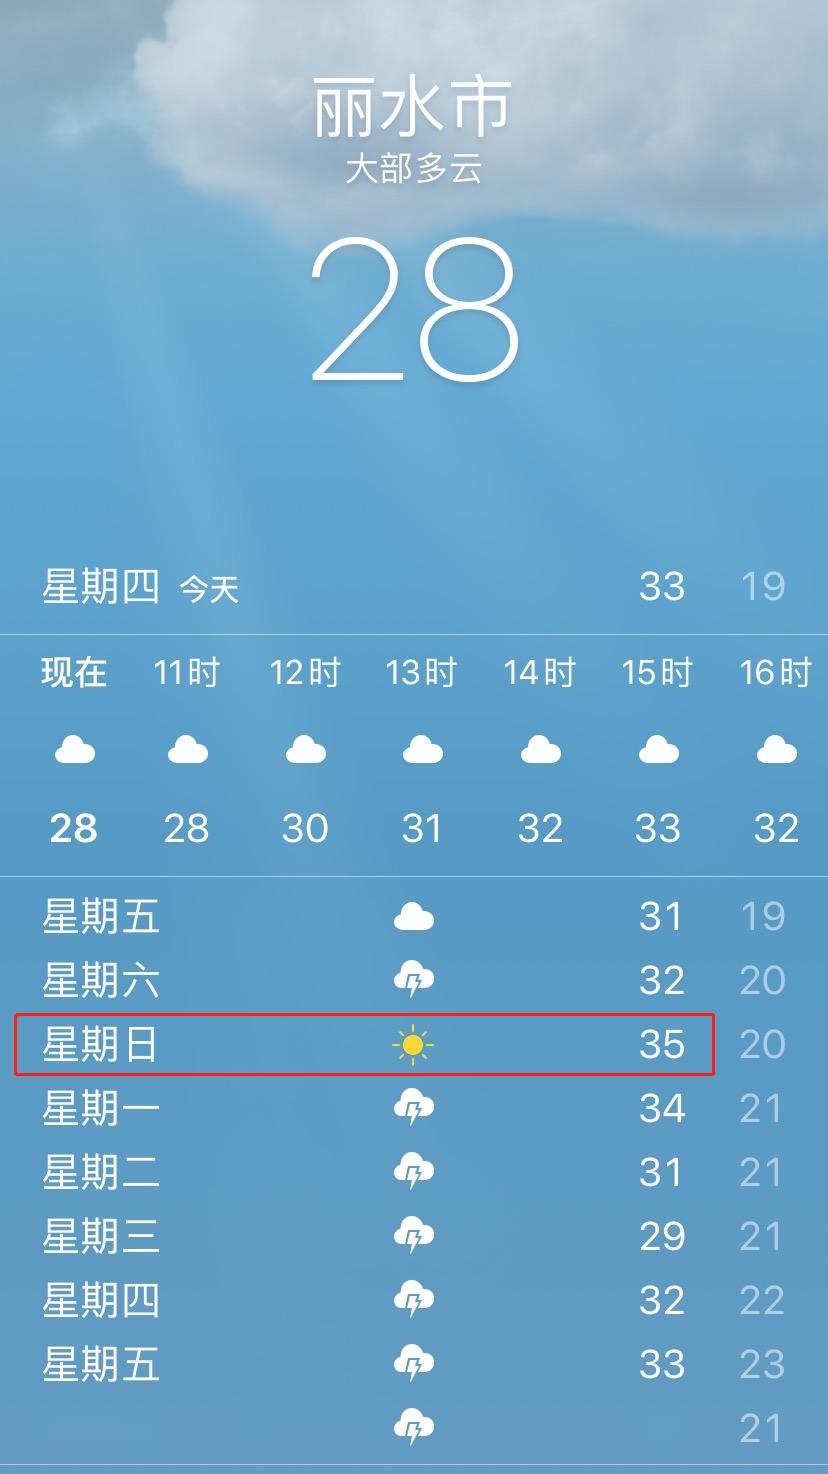 30℃ 天气即将来袭 热热热热热 苹果手机自带天气预报显示 接下来的